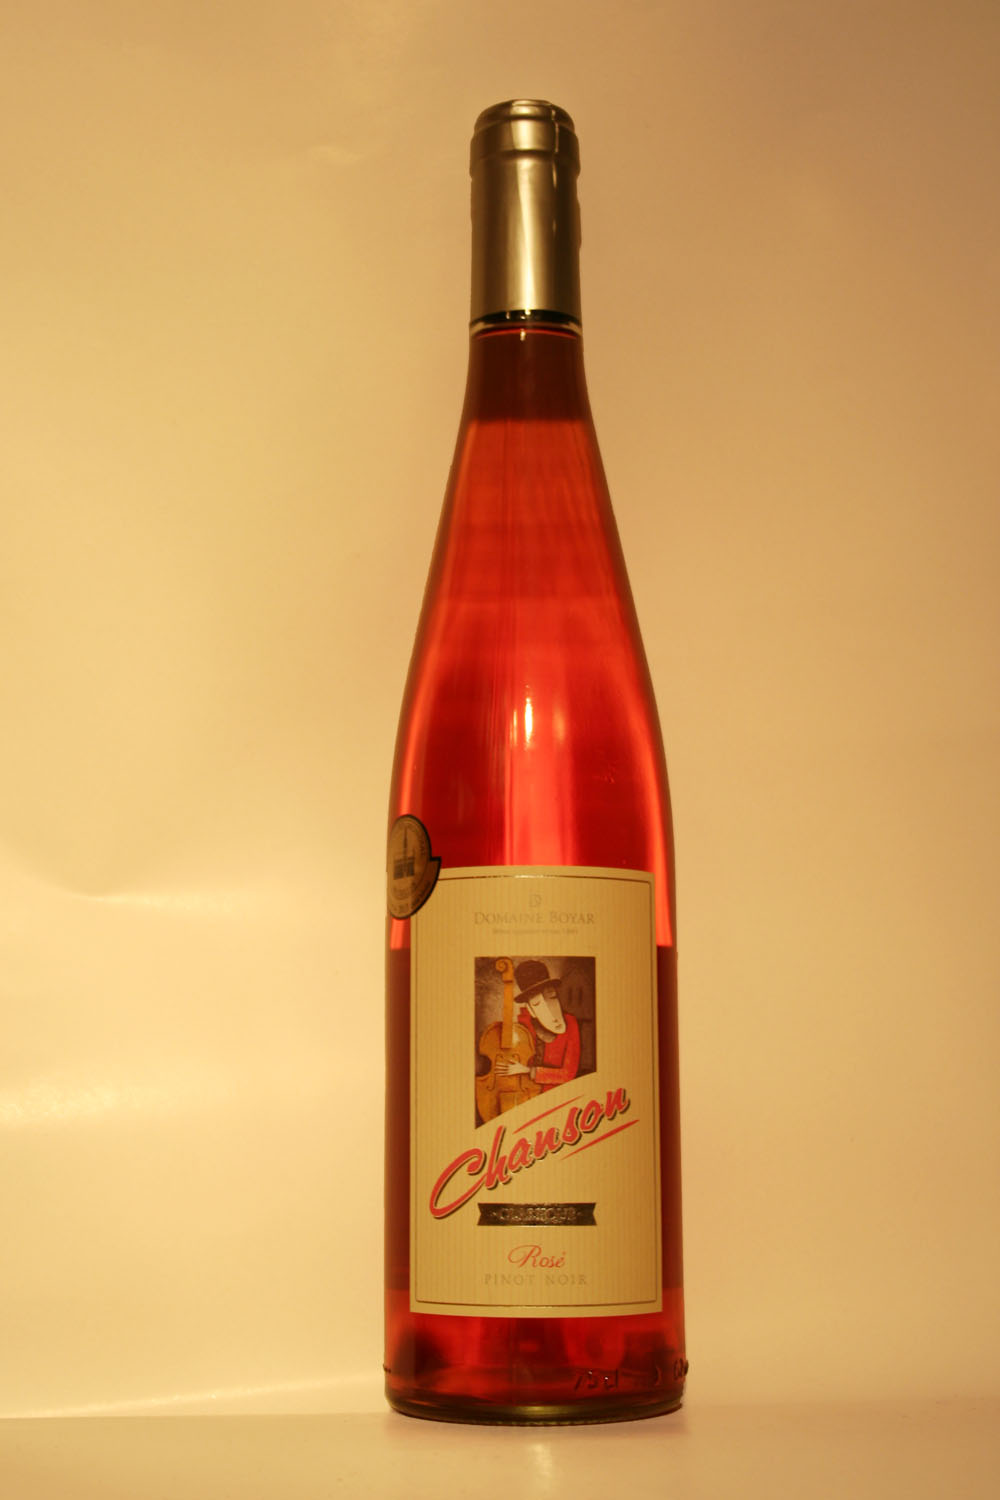 Chanson Rose Pinot Noir 2012 - Кликнете на изображението, за да го затворите